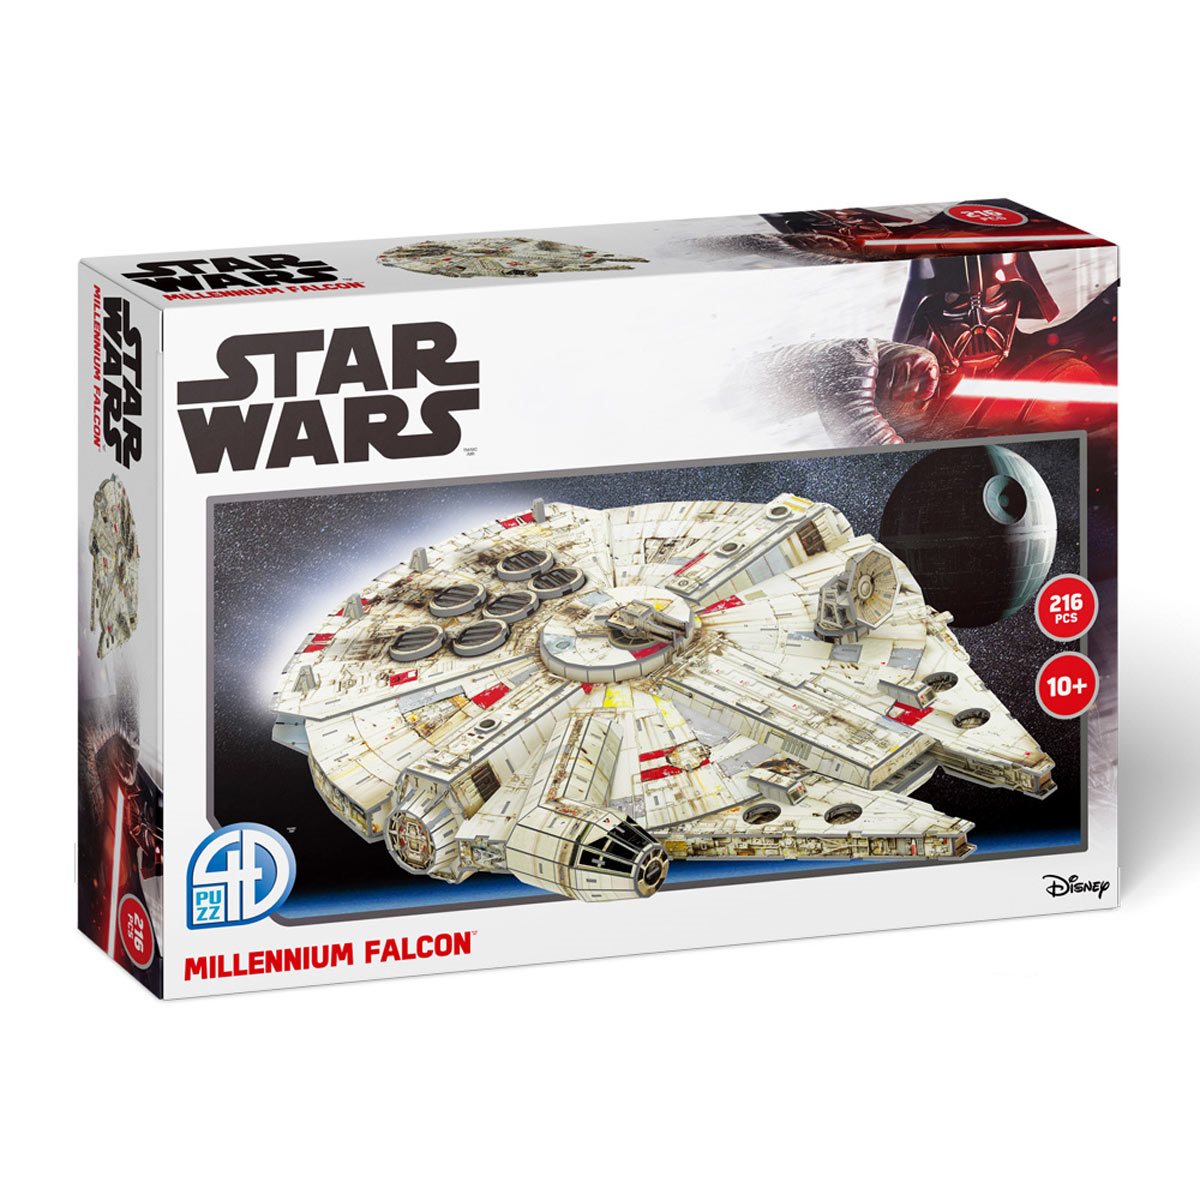 Star Wars Millennium Falcon 3D Model Kit